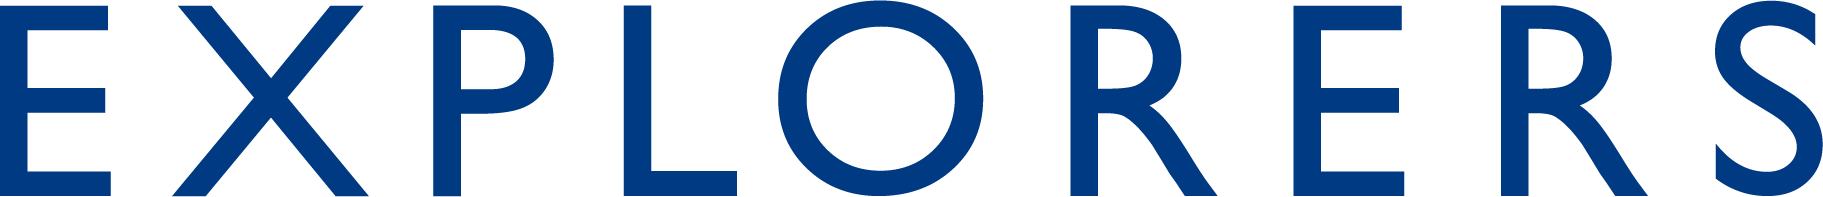 explorers logo blue